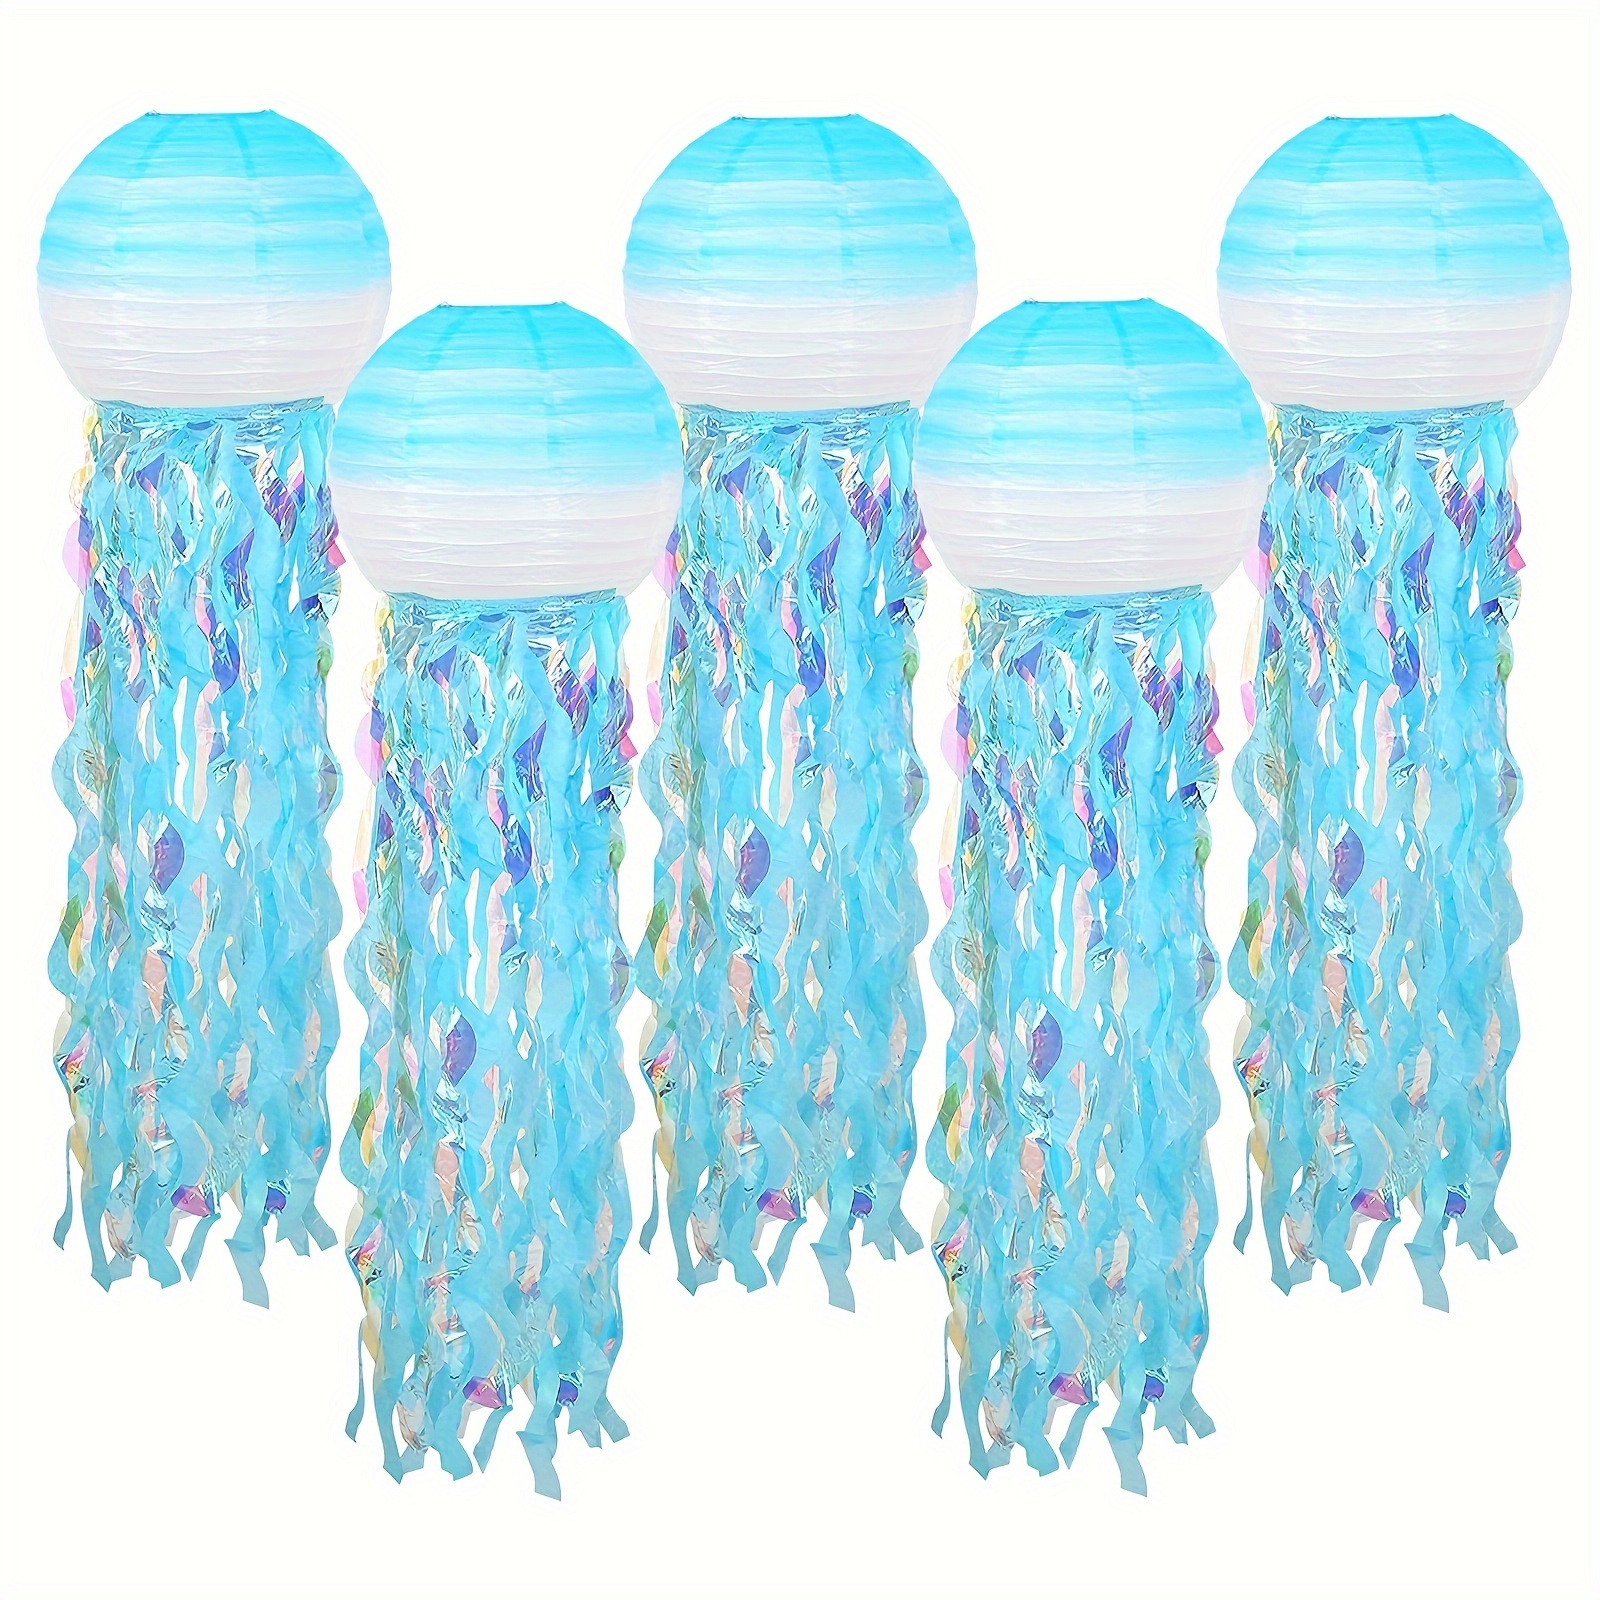 Jelly Fish Paper Lanterns, 6Pcs Blue White Hanging Paper Lanterns